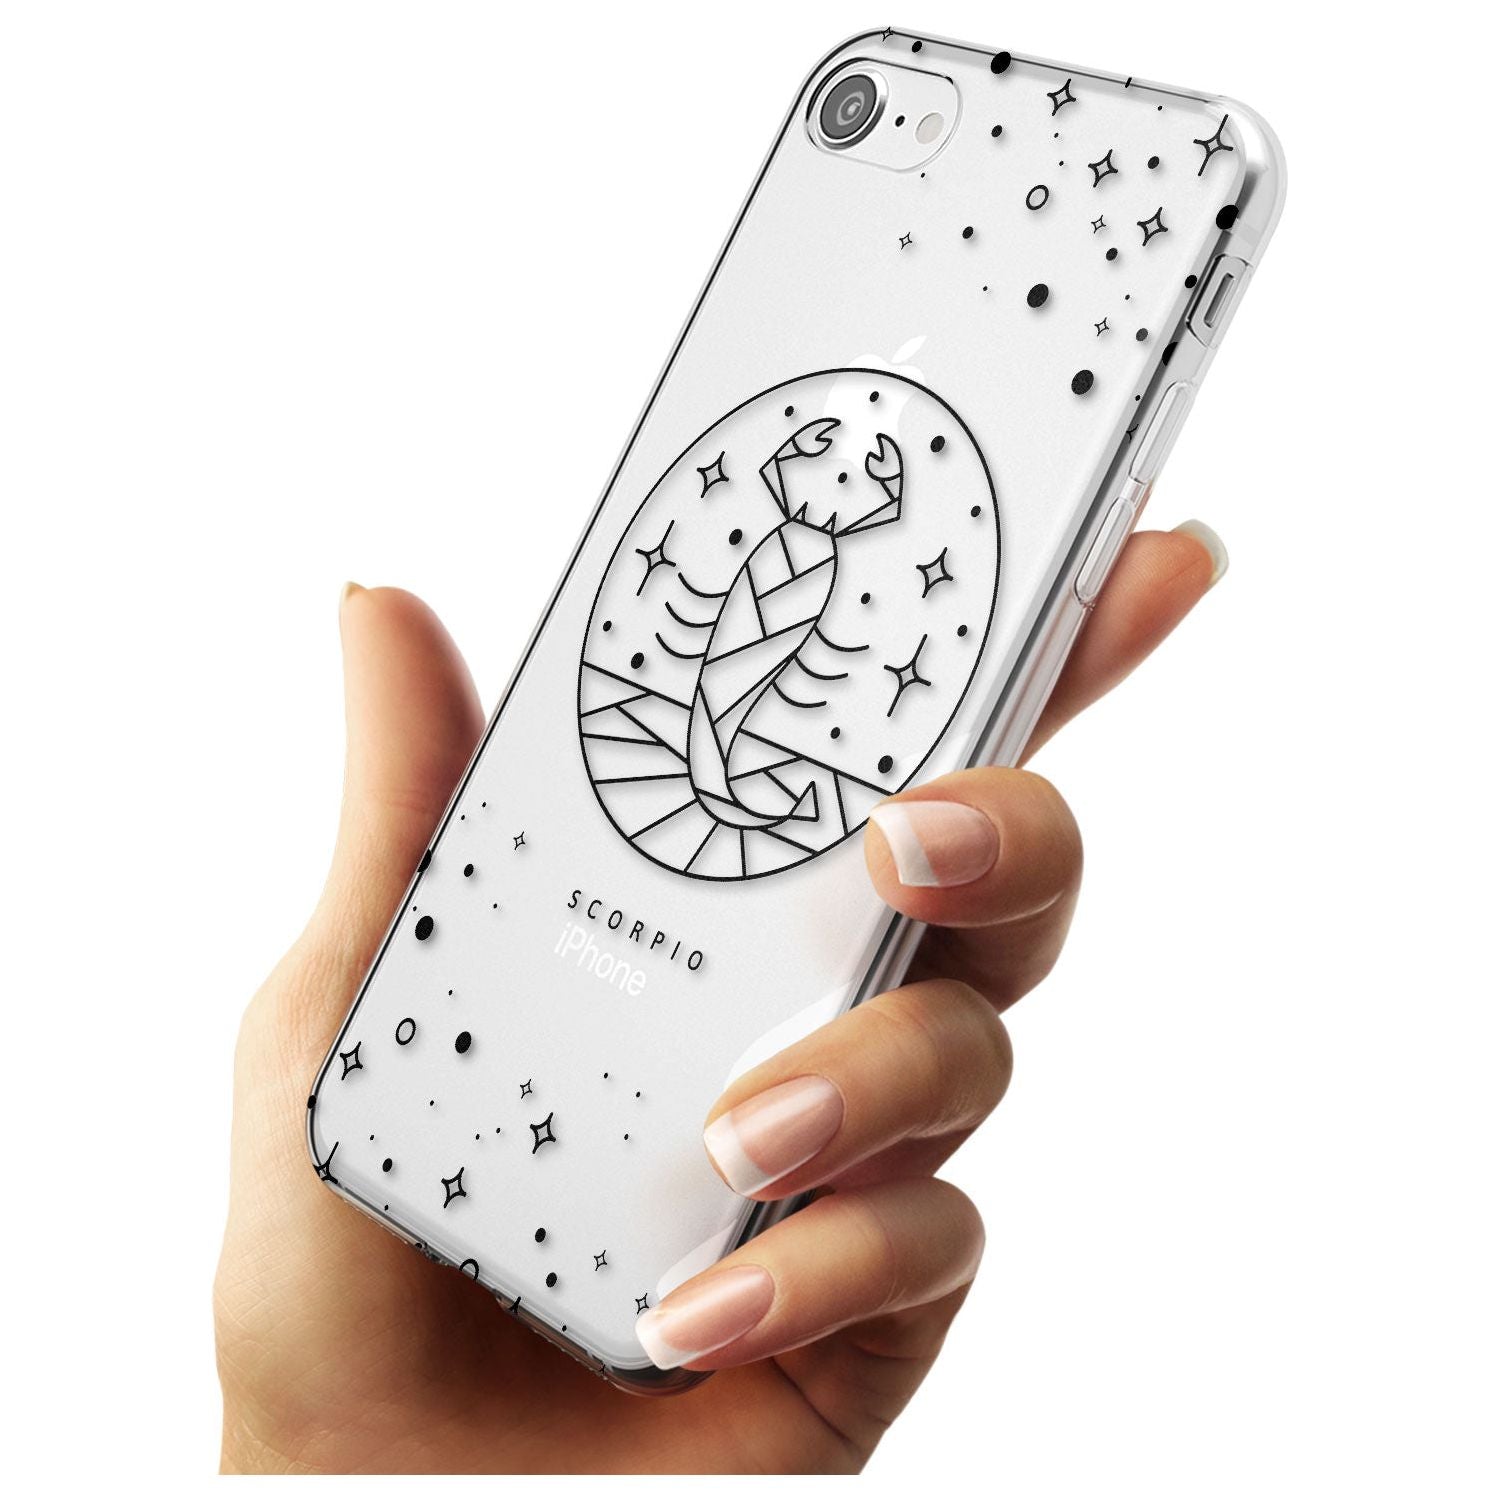 Scorpio Emblem - Transparent Design Slim TPU Phone Case for iPhone SE 8 7 Plus